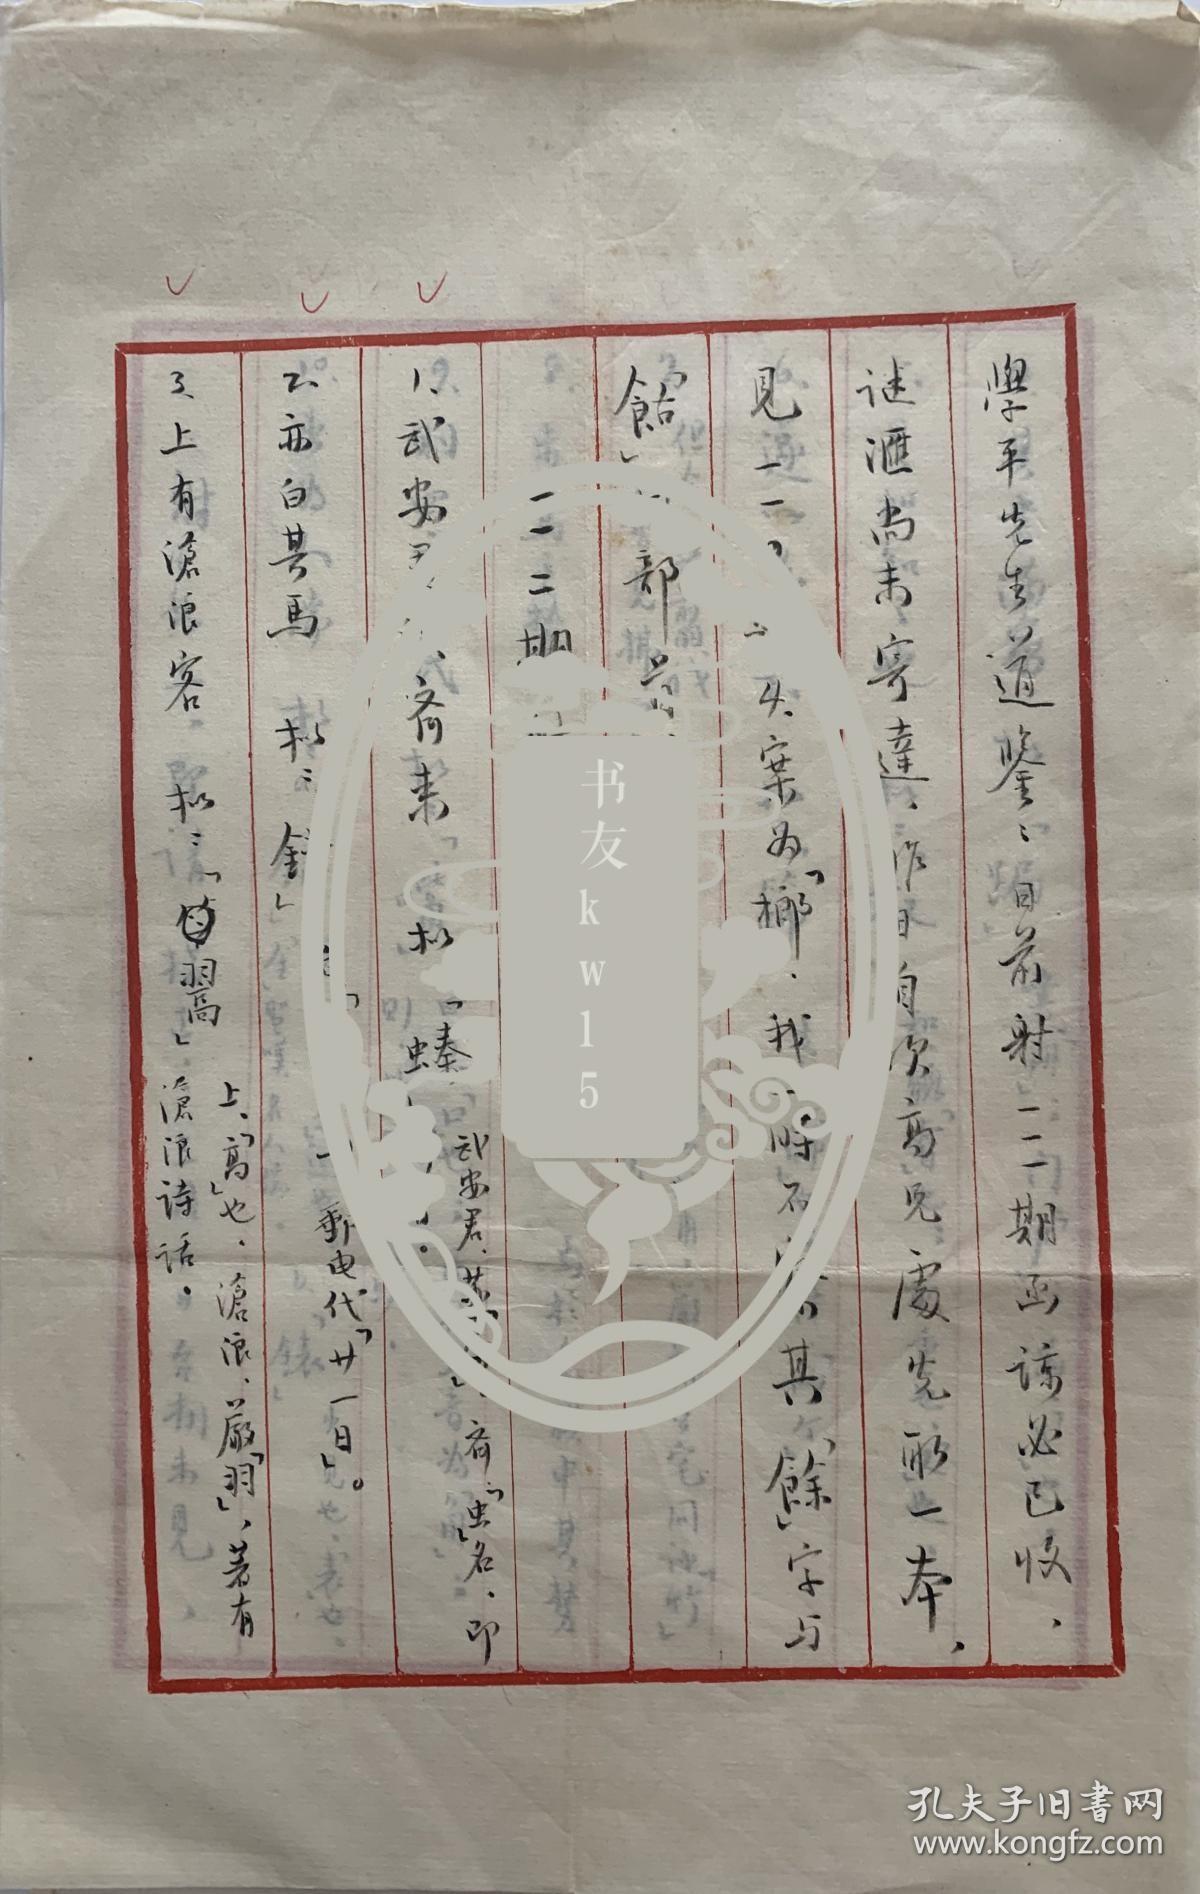 台湾著名灯谜专家康维人致学平毛笔信札3页。